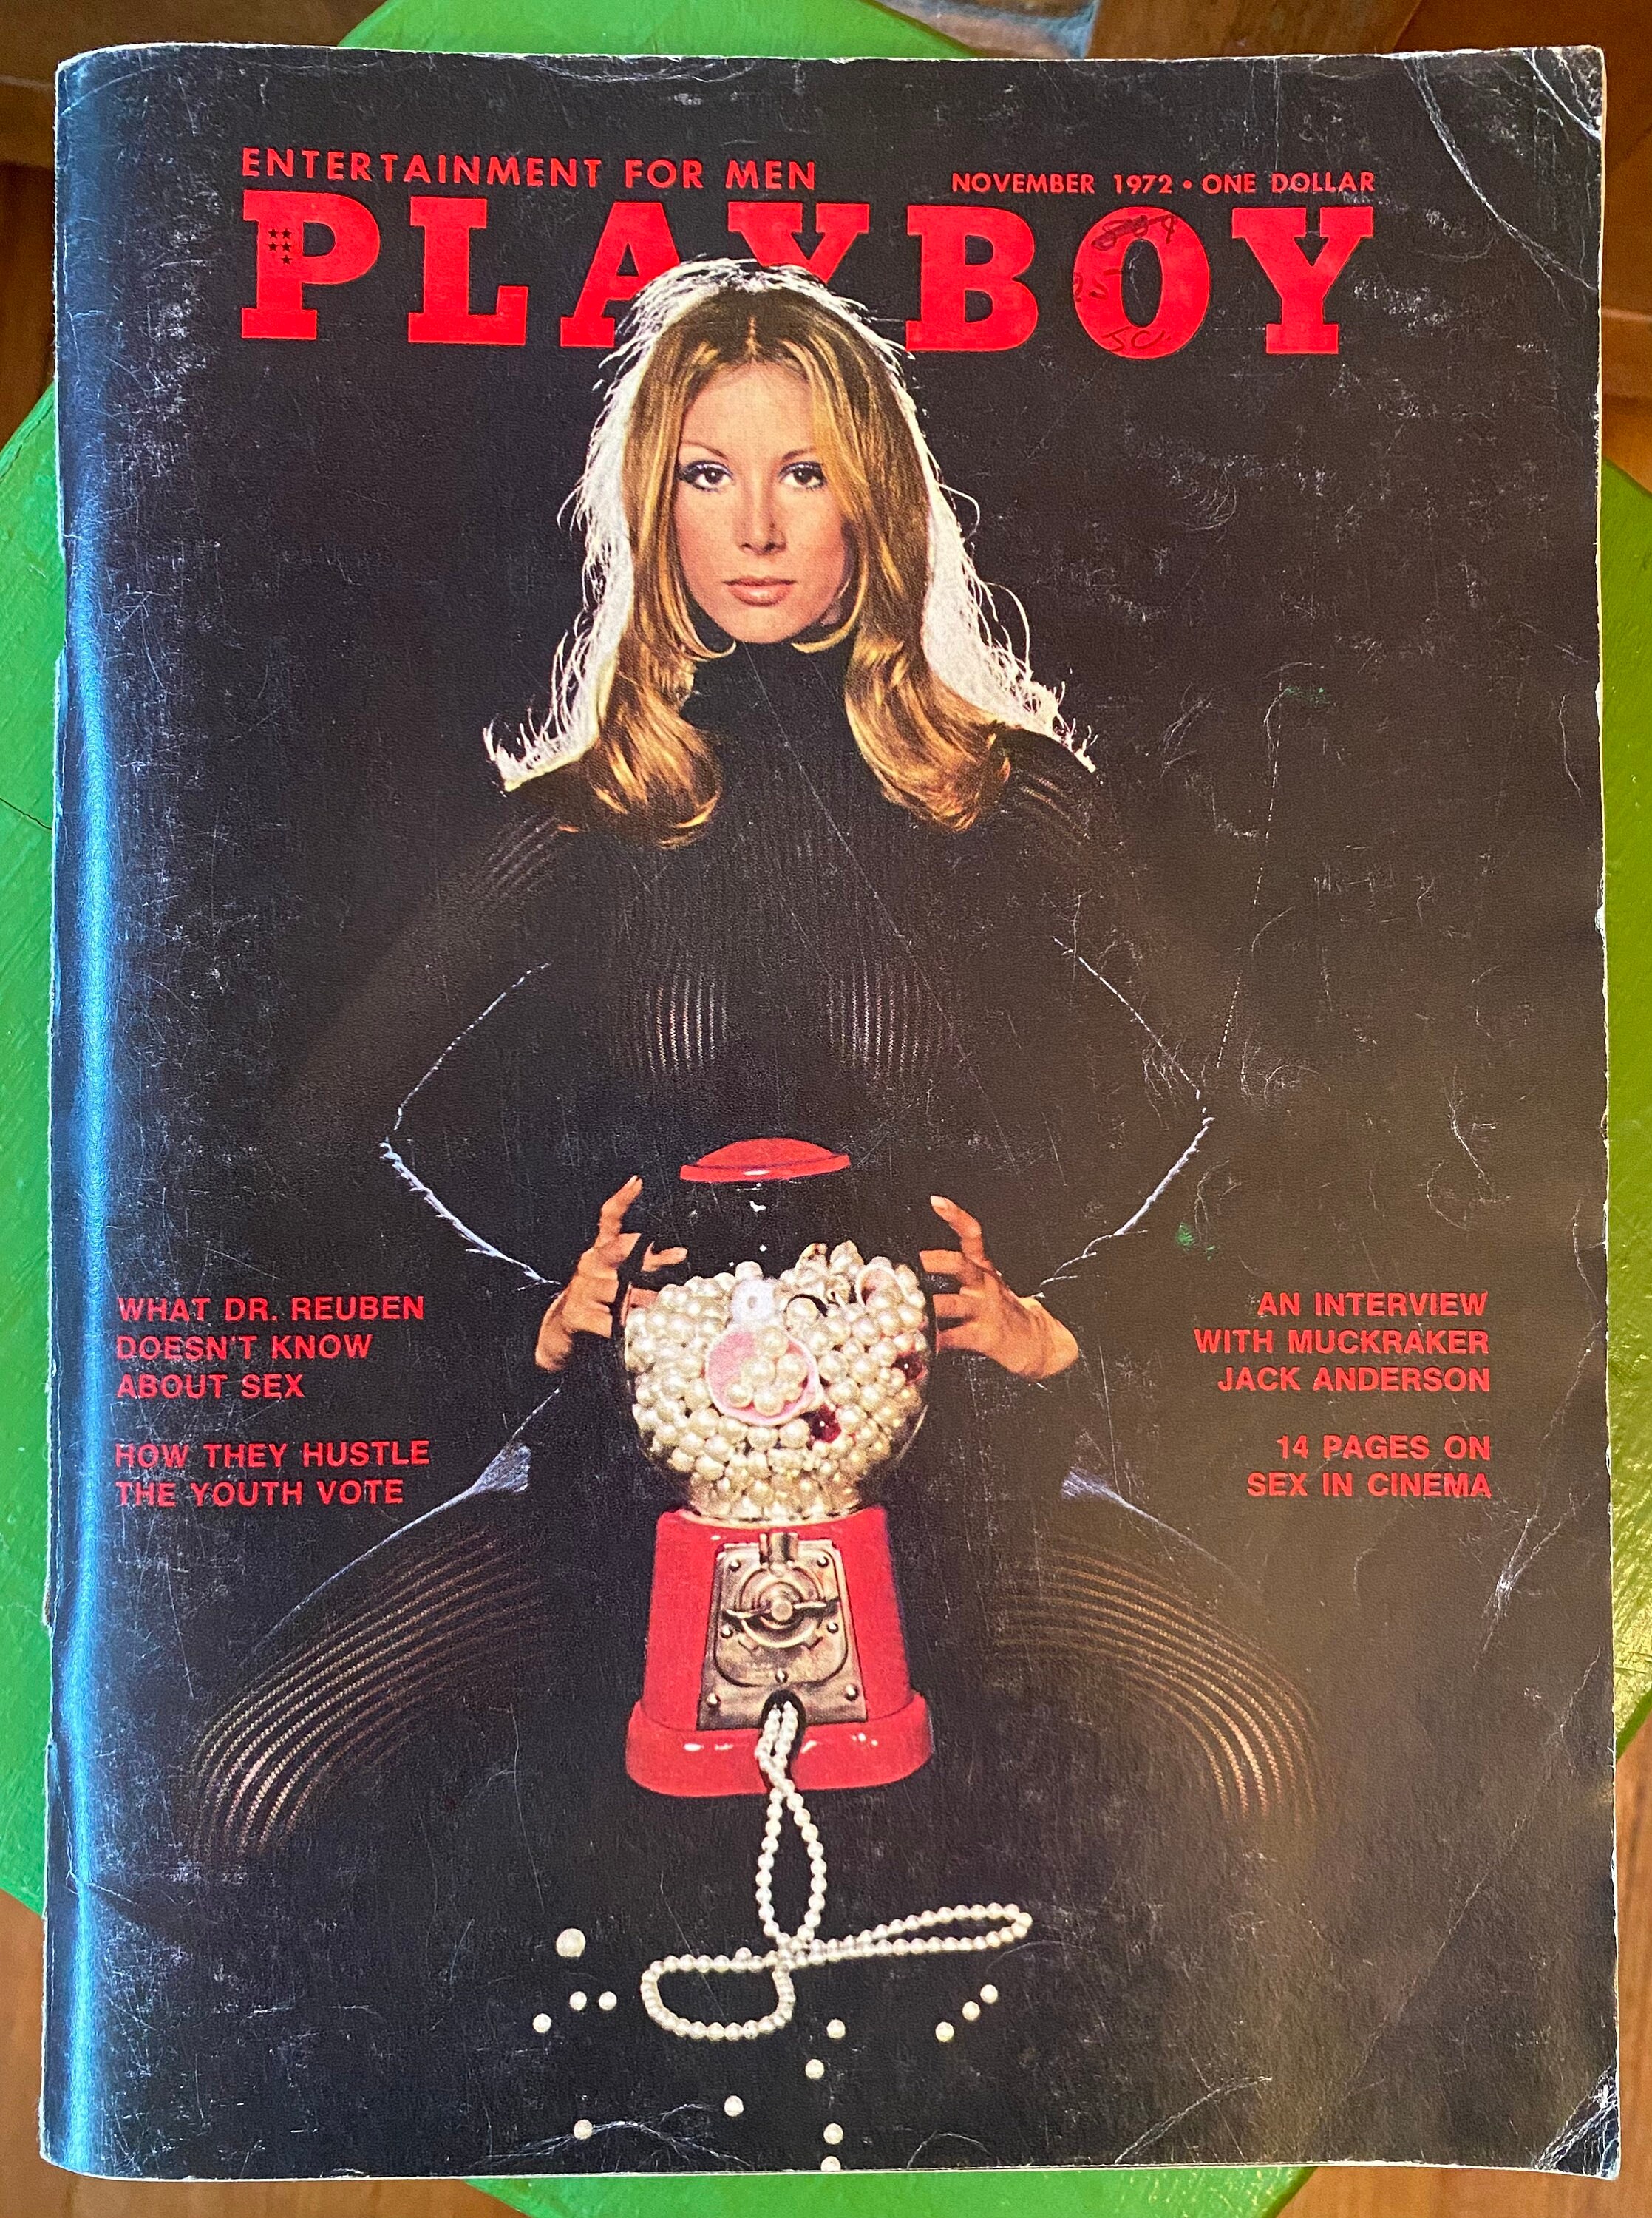 Calendrier Playboy 2024 (Broché) au meilleur prix